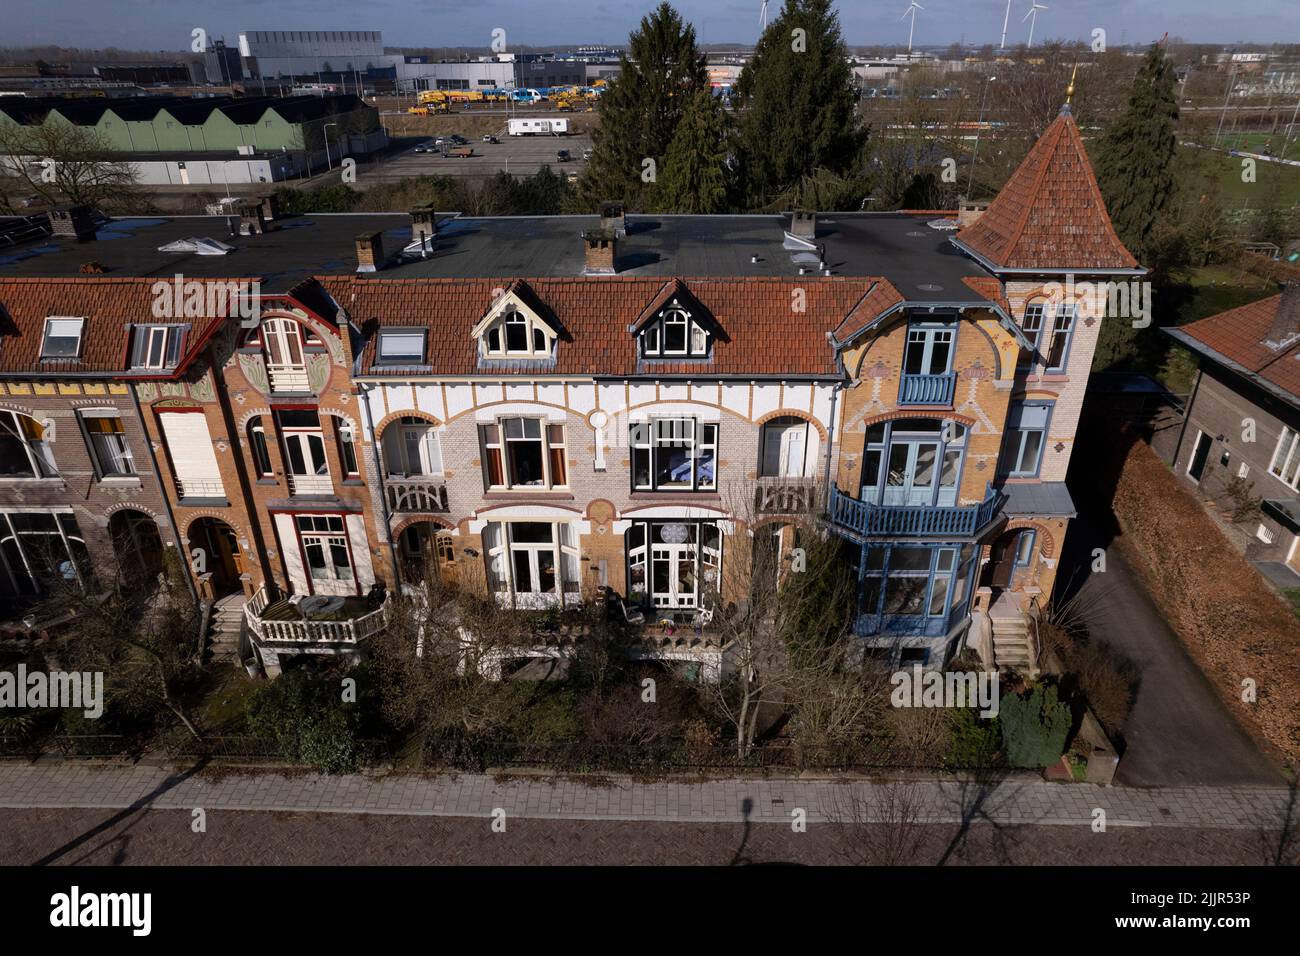 Vista aerea dell'architettura storica, case residenziali in stile Art Nouveau colorate ispirate alla filosofia antropoposofica Foto Stock